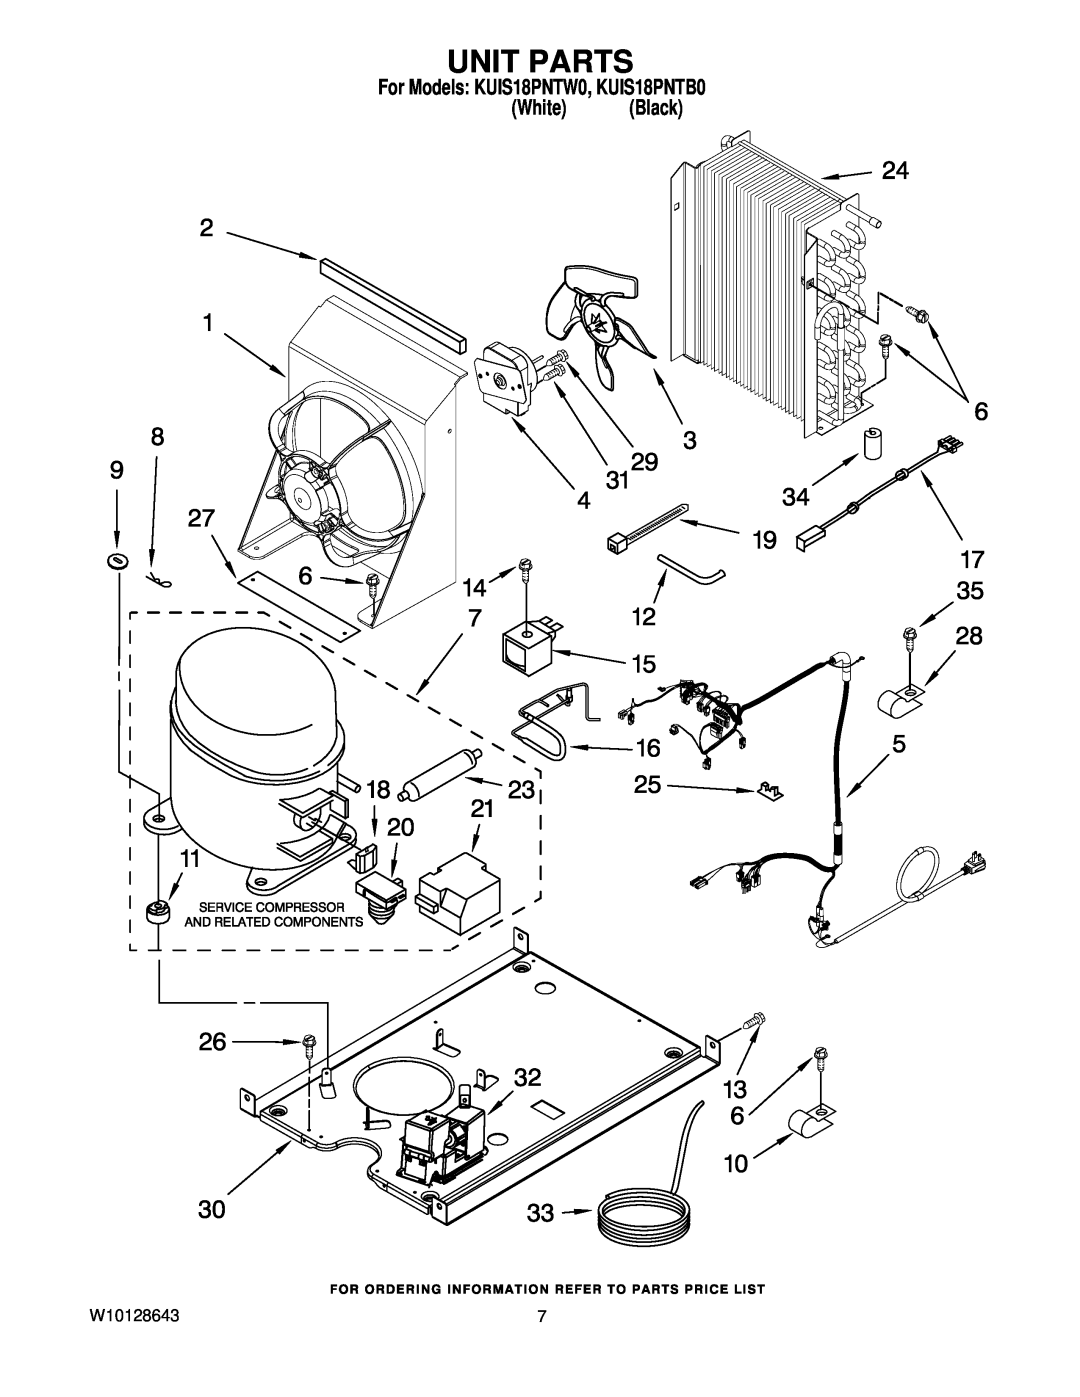 KitchenAid manual Unit Parts, For Models KUIS18PNTW0, KUIS18PNTB0 White Black 